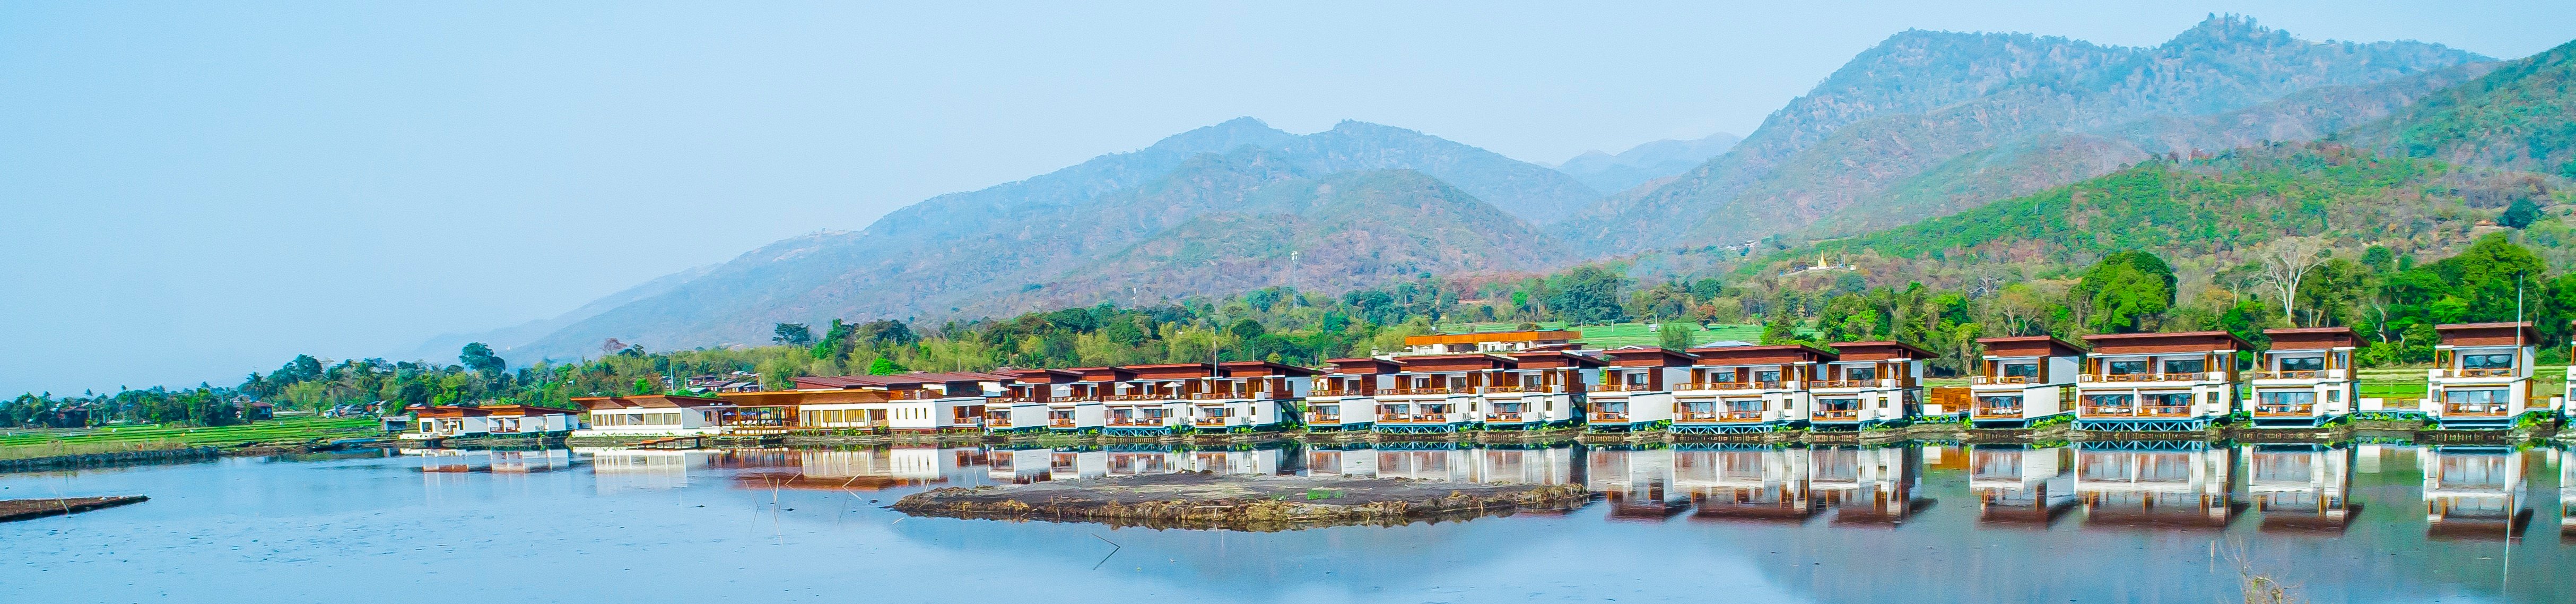 Image of Sofitel Inle Lake Myat Min